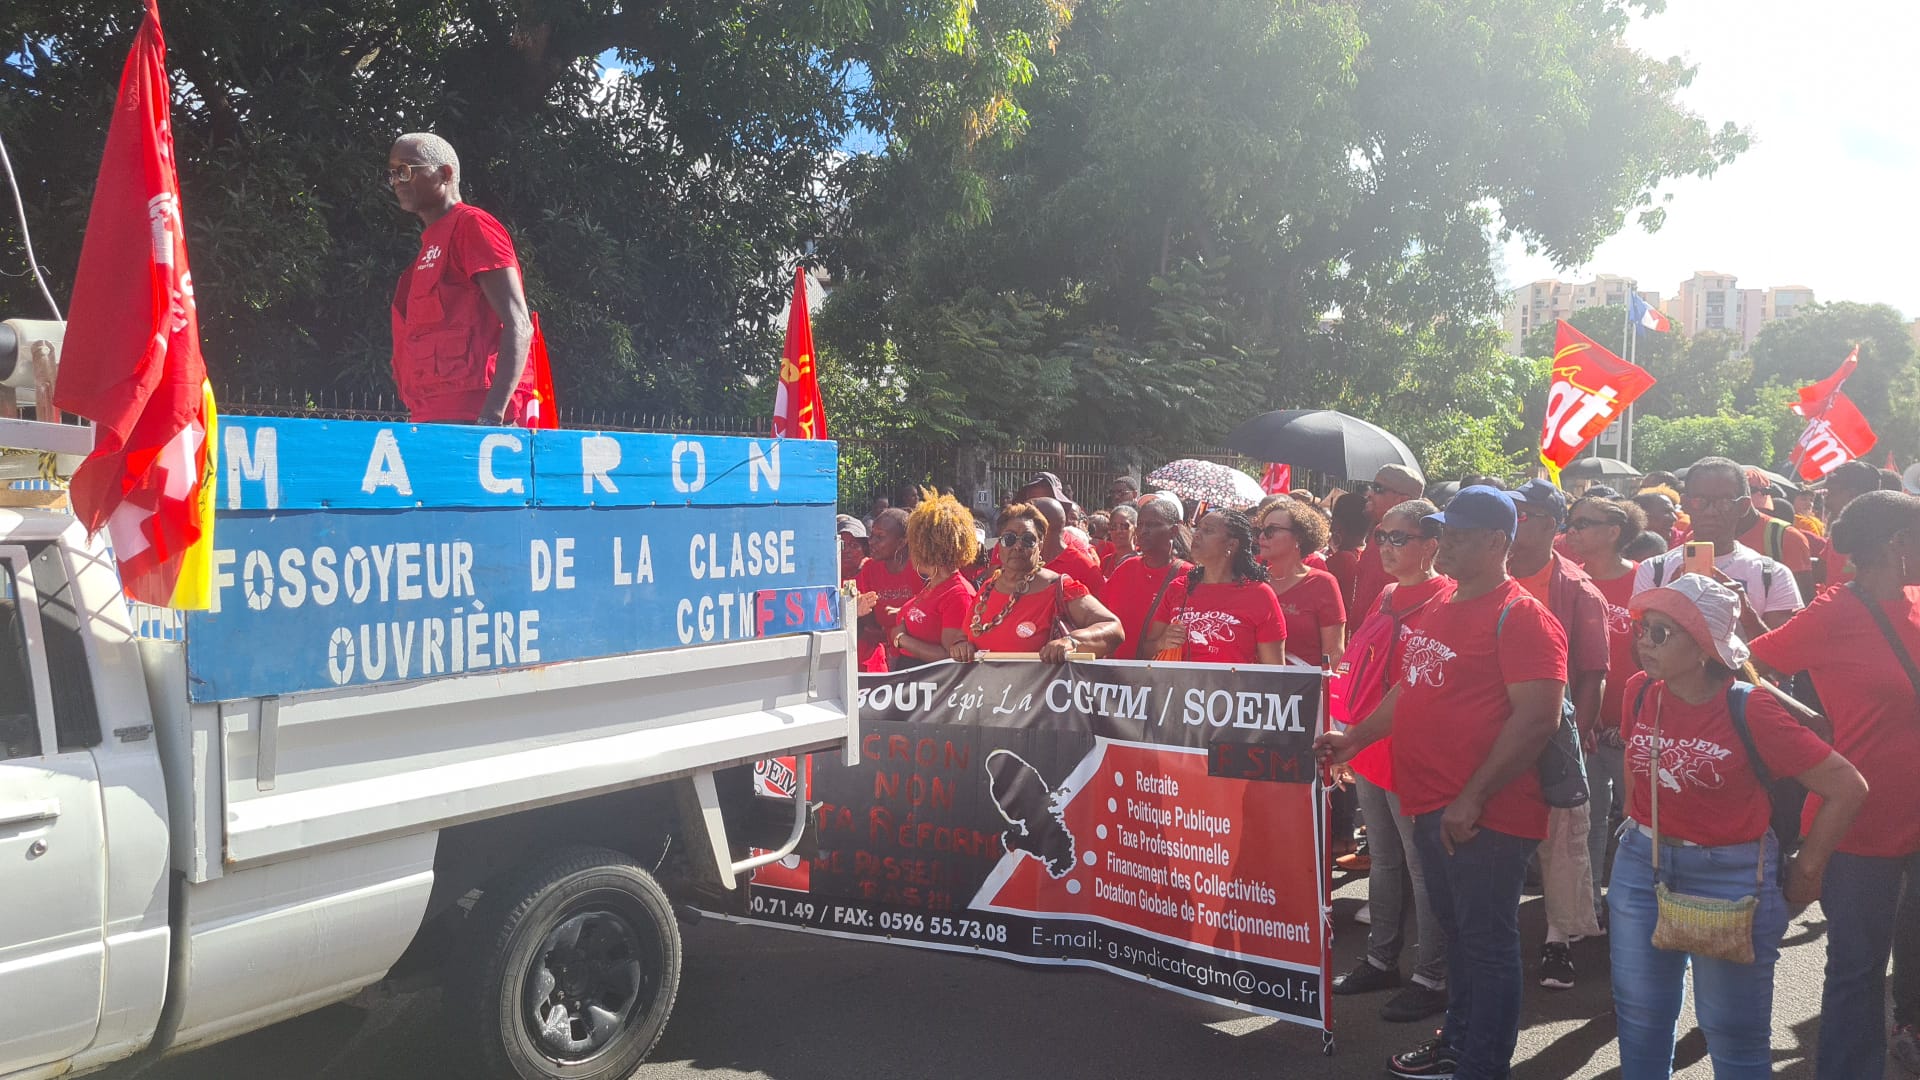     À Fort-de-France, les syndicats disent non à la réforme des retraites d'Emmanuel Macron

